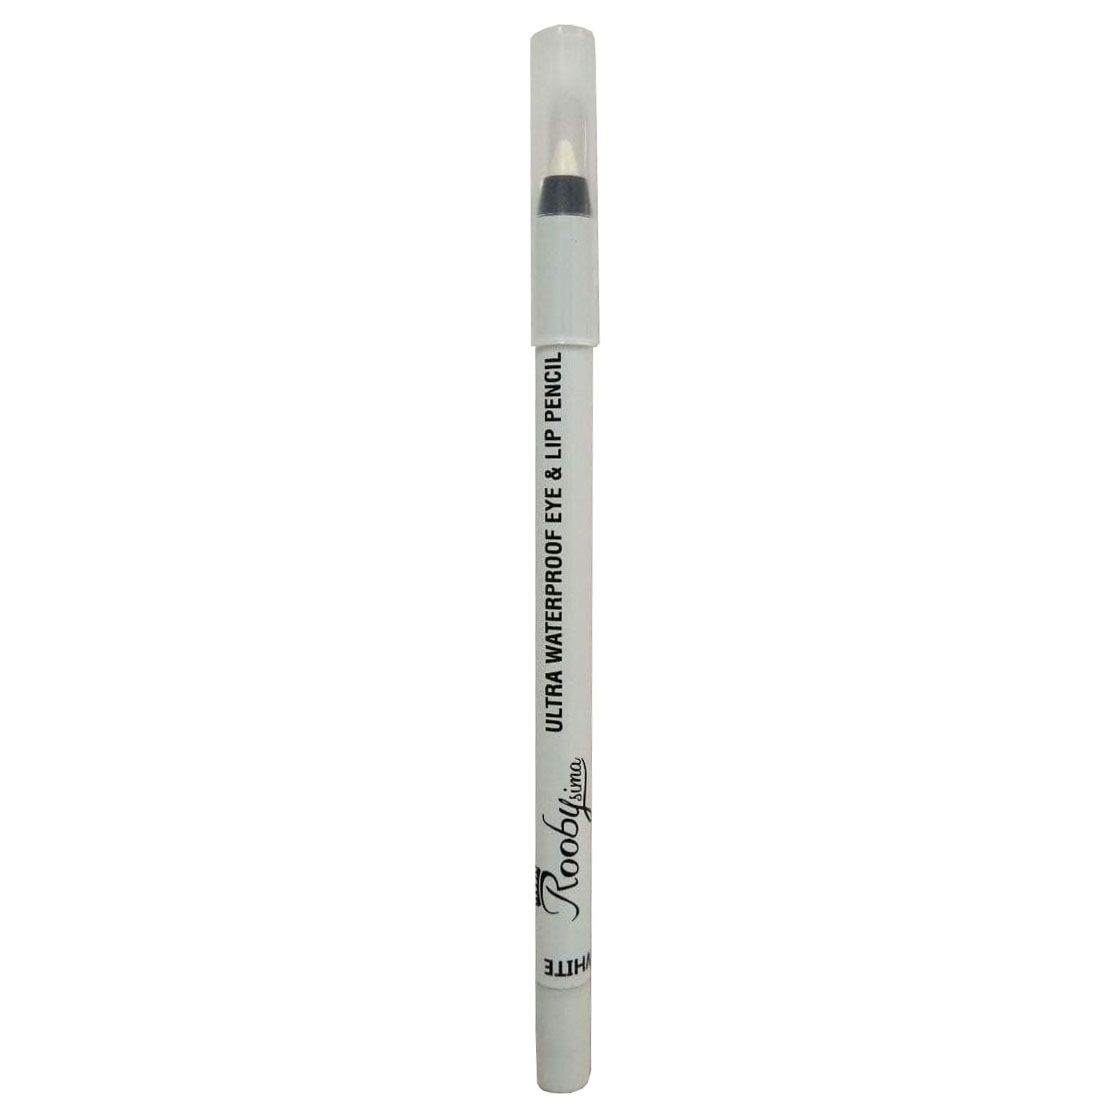 مداد چشم روبیسیما شماره 02 -  - 1